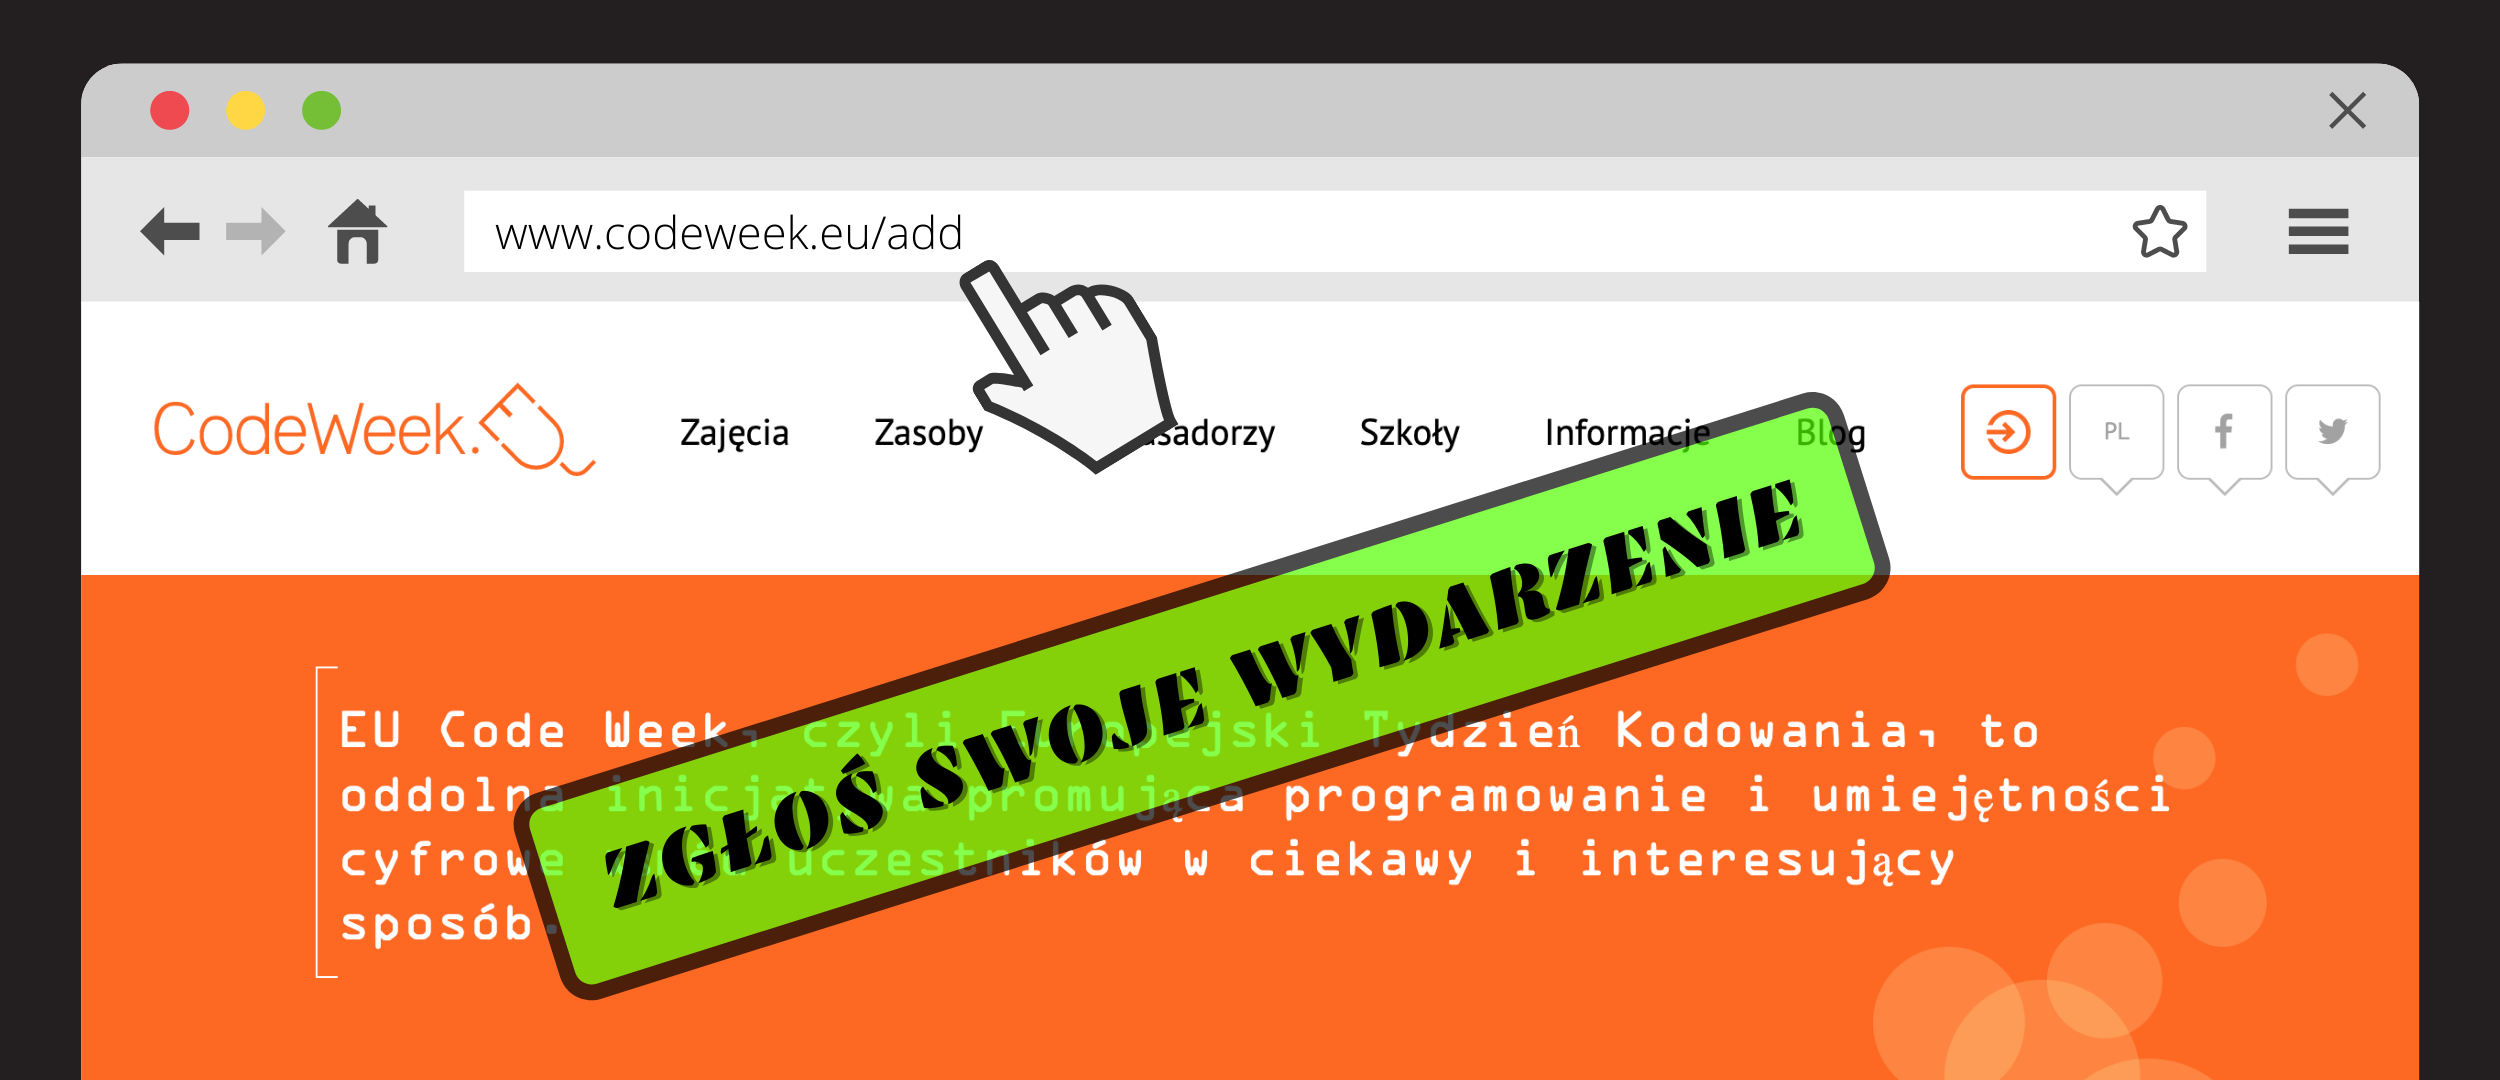 Grafika przedstawia ekran wyszukiwarki internetowej, na której wyświetlona jest strona startowa www.codeweek.eu. Na górze grafiki znajduje się pasek wyszukiwania, w którym wpisany jest adres: www.codeweek.eu/add. Wskazuje na niego animowany kursor myszy. Na środku grafiki znajduje się czarny napis w zielonej ramce, który brzmi: "Zgłoś swoje wydarzenie".